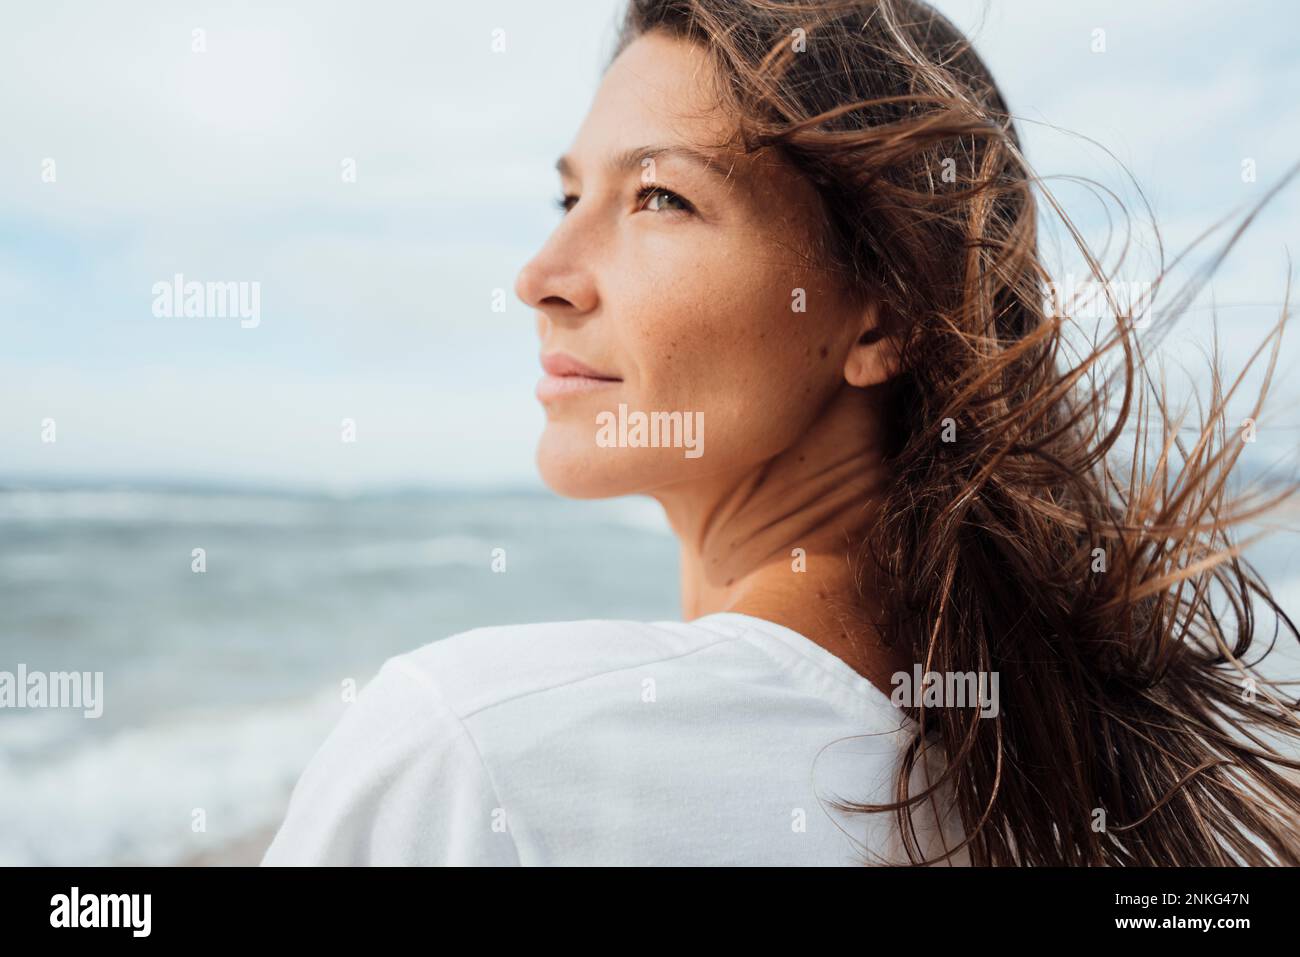 Kontemplative Frau mit langen Haaren am Strand Stockfoto